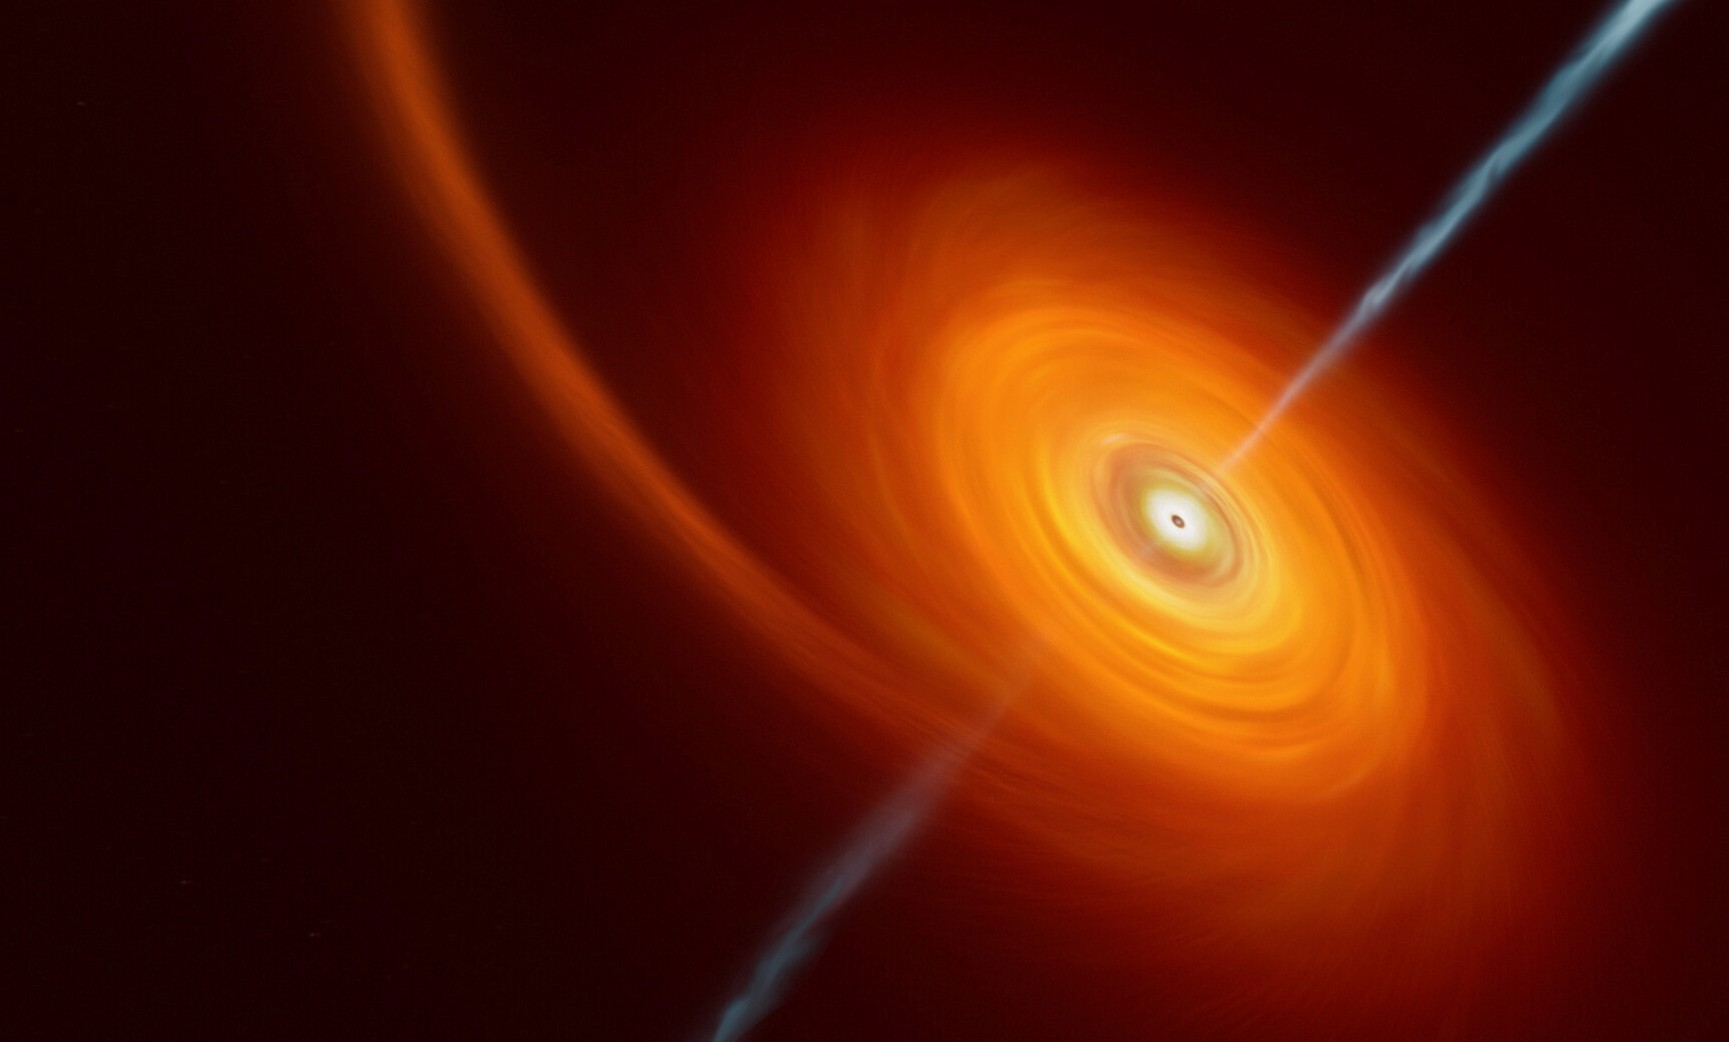 Cette vue d'artiste illustre ce qui se passe lorsqu'une étoile s'approche trop près d'un trou noir, où l'étoile est comprimée par l'intense attraction gravitationnelle du trou noir. Une partie de la matière de l'étoile est aspirée et tourbillonne autour du trou noir, formant le disque que l'on peut voir sur cette image. Dans de rares cas, comme celui-ci, des jets de matière et de rayonnements sont projetés depuis les pôles du trou noir. Dans le cas de l'événement AT2022cmc, les preuves de ces jets ont été détectées par différents télescopes, dont le VLT, qui a déterminé qu'il s'agissait de l'exemple le plus éloigné d'un tel événement. © M.Kornmesser, ESO